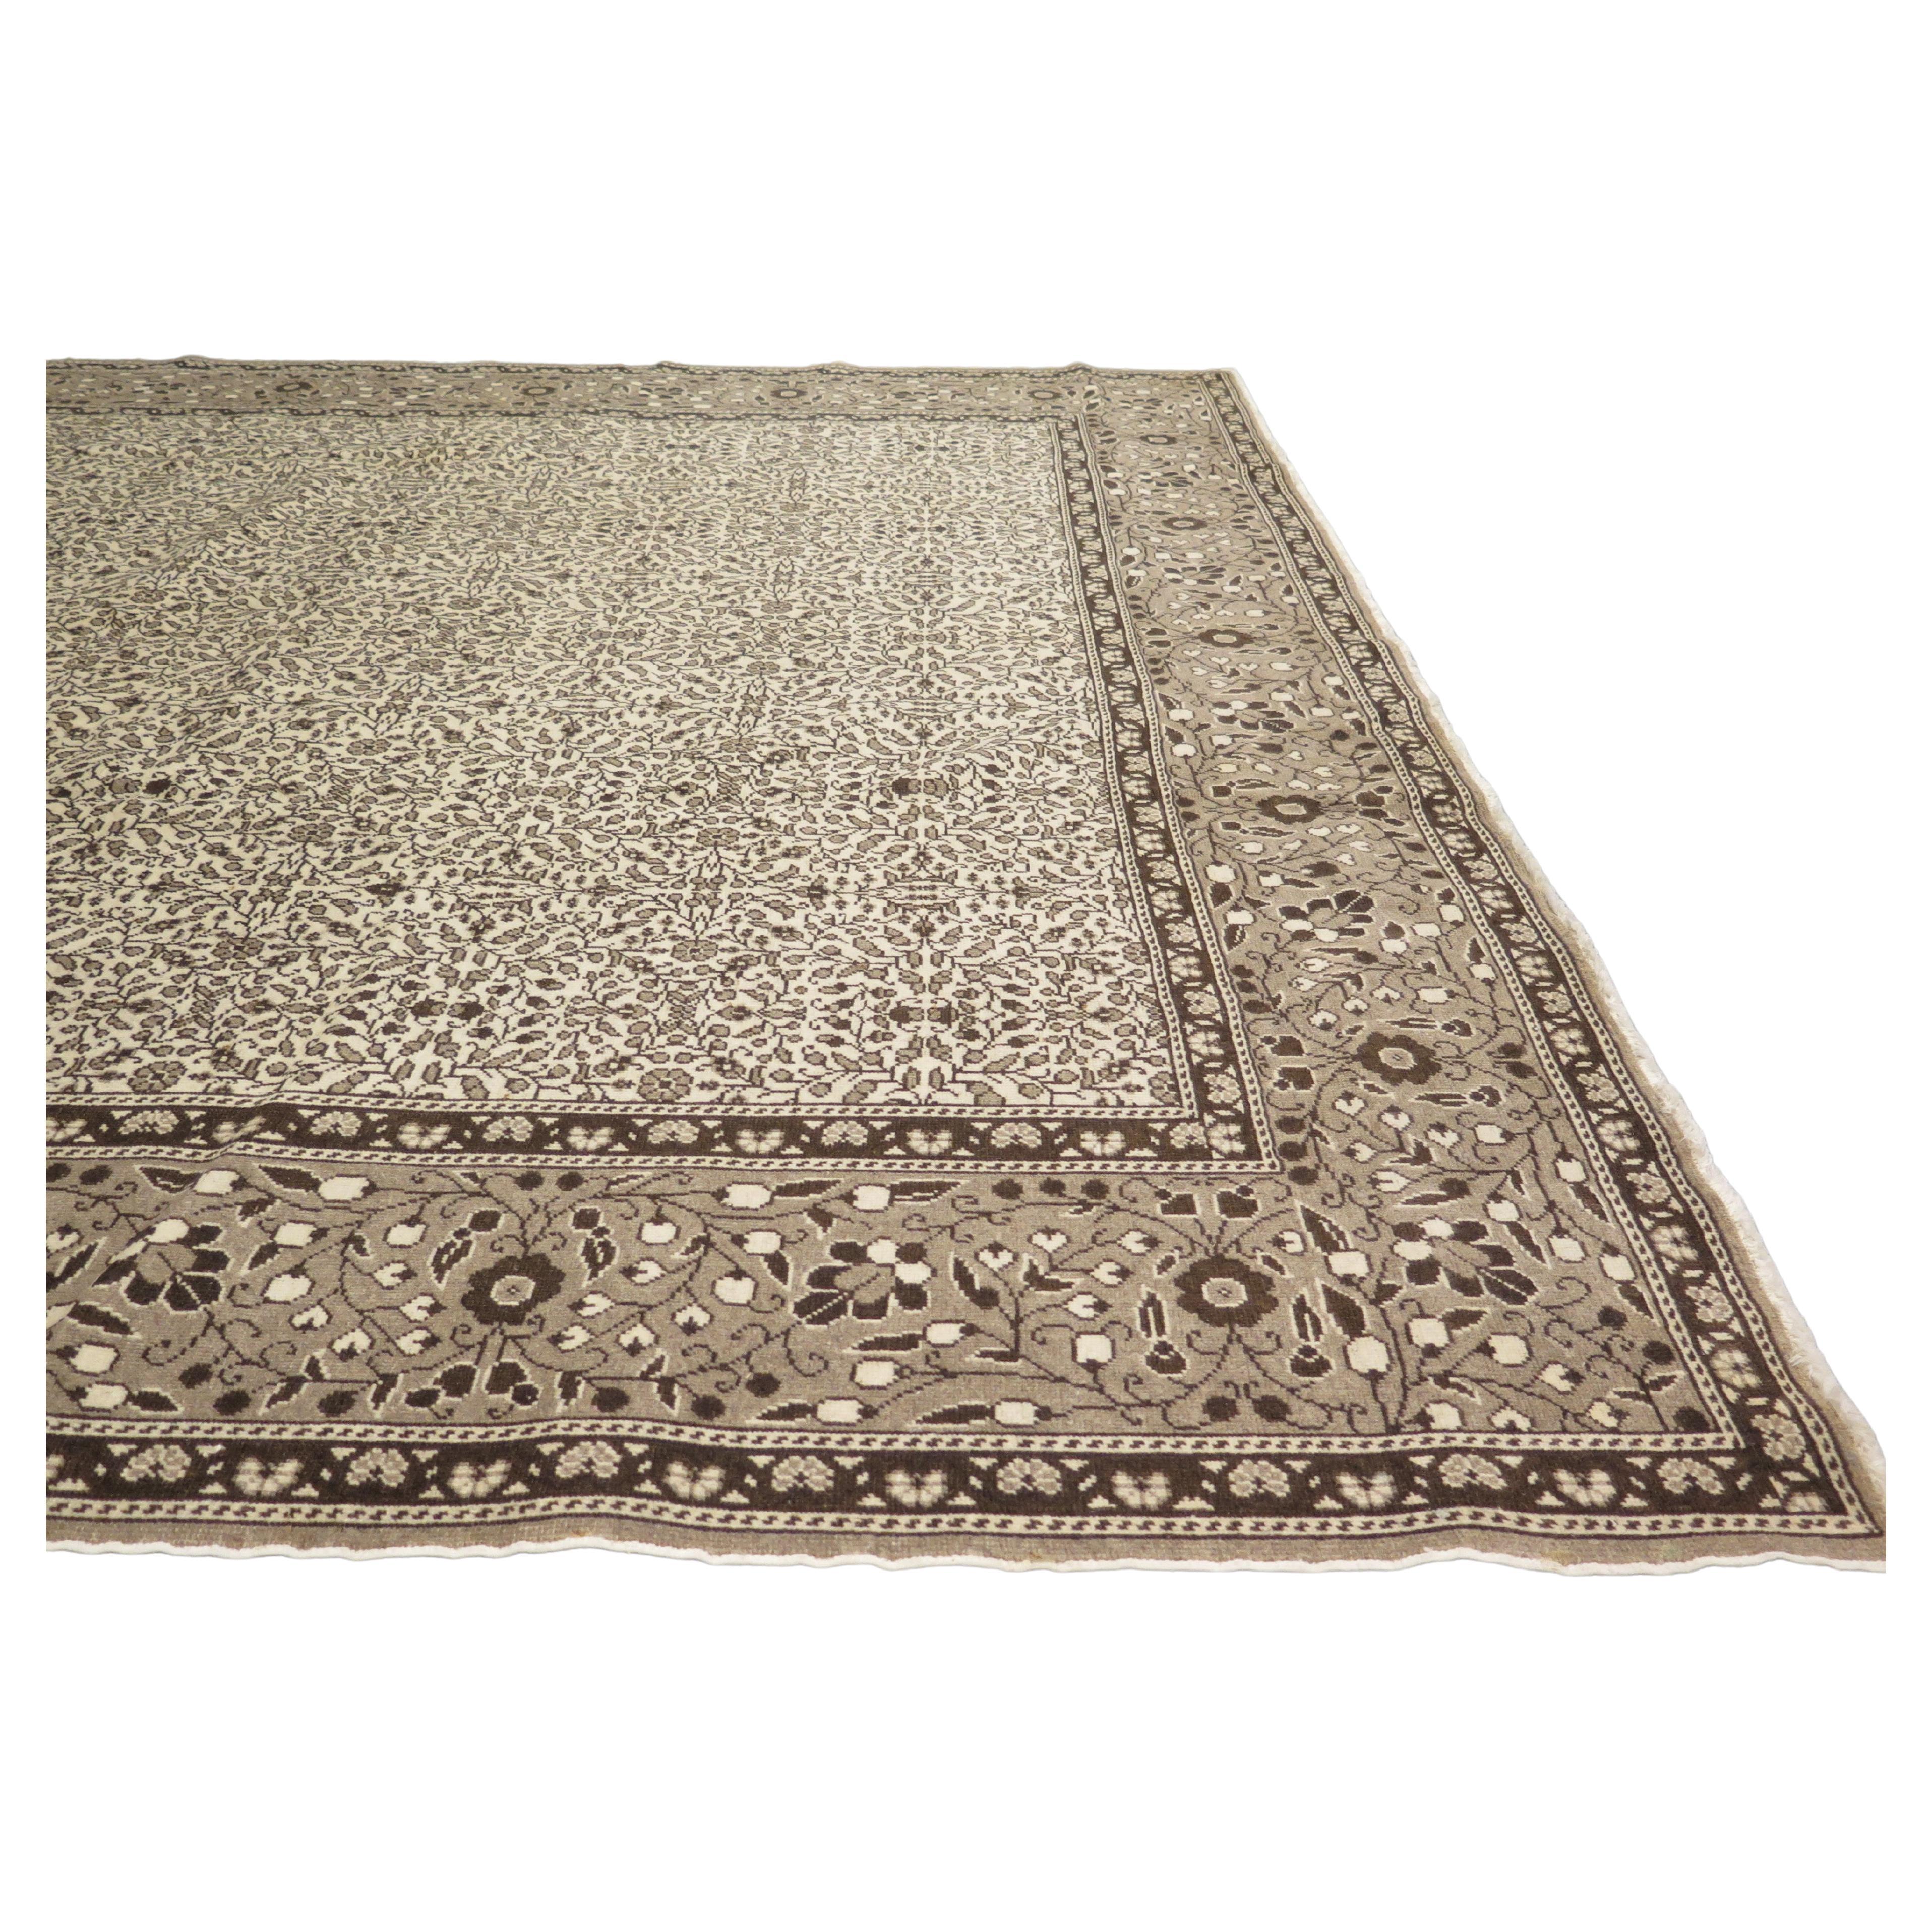 Mimimalist 1930s Anatolian Carpet